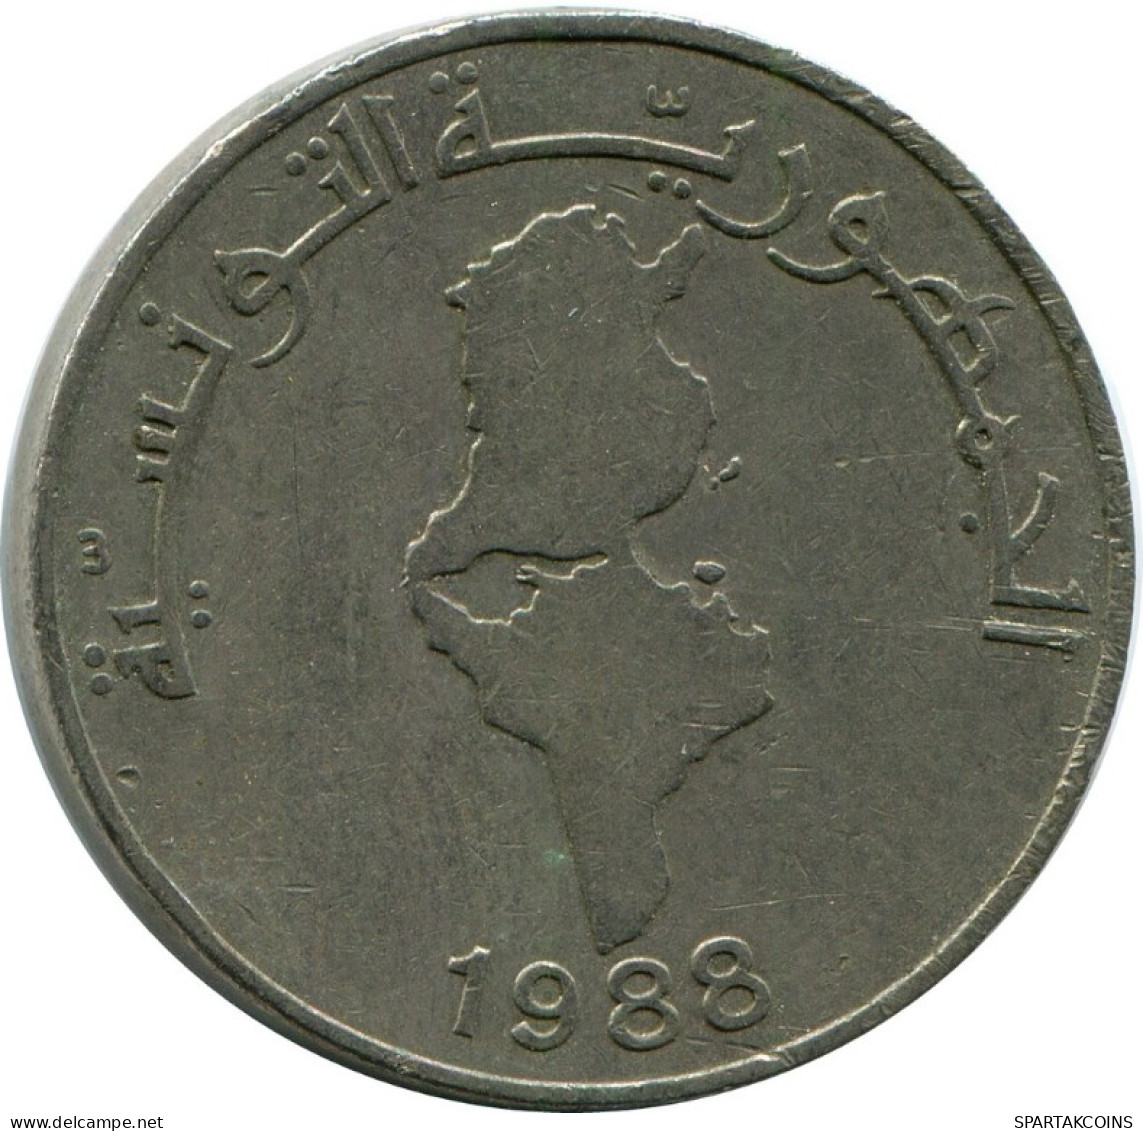 1 DINAR 1988 TUNISIA Coin #AH929.U.A - Tunisie